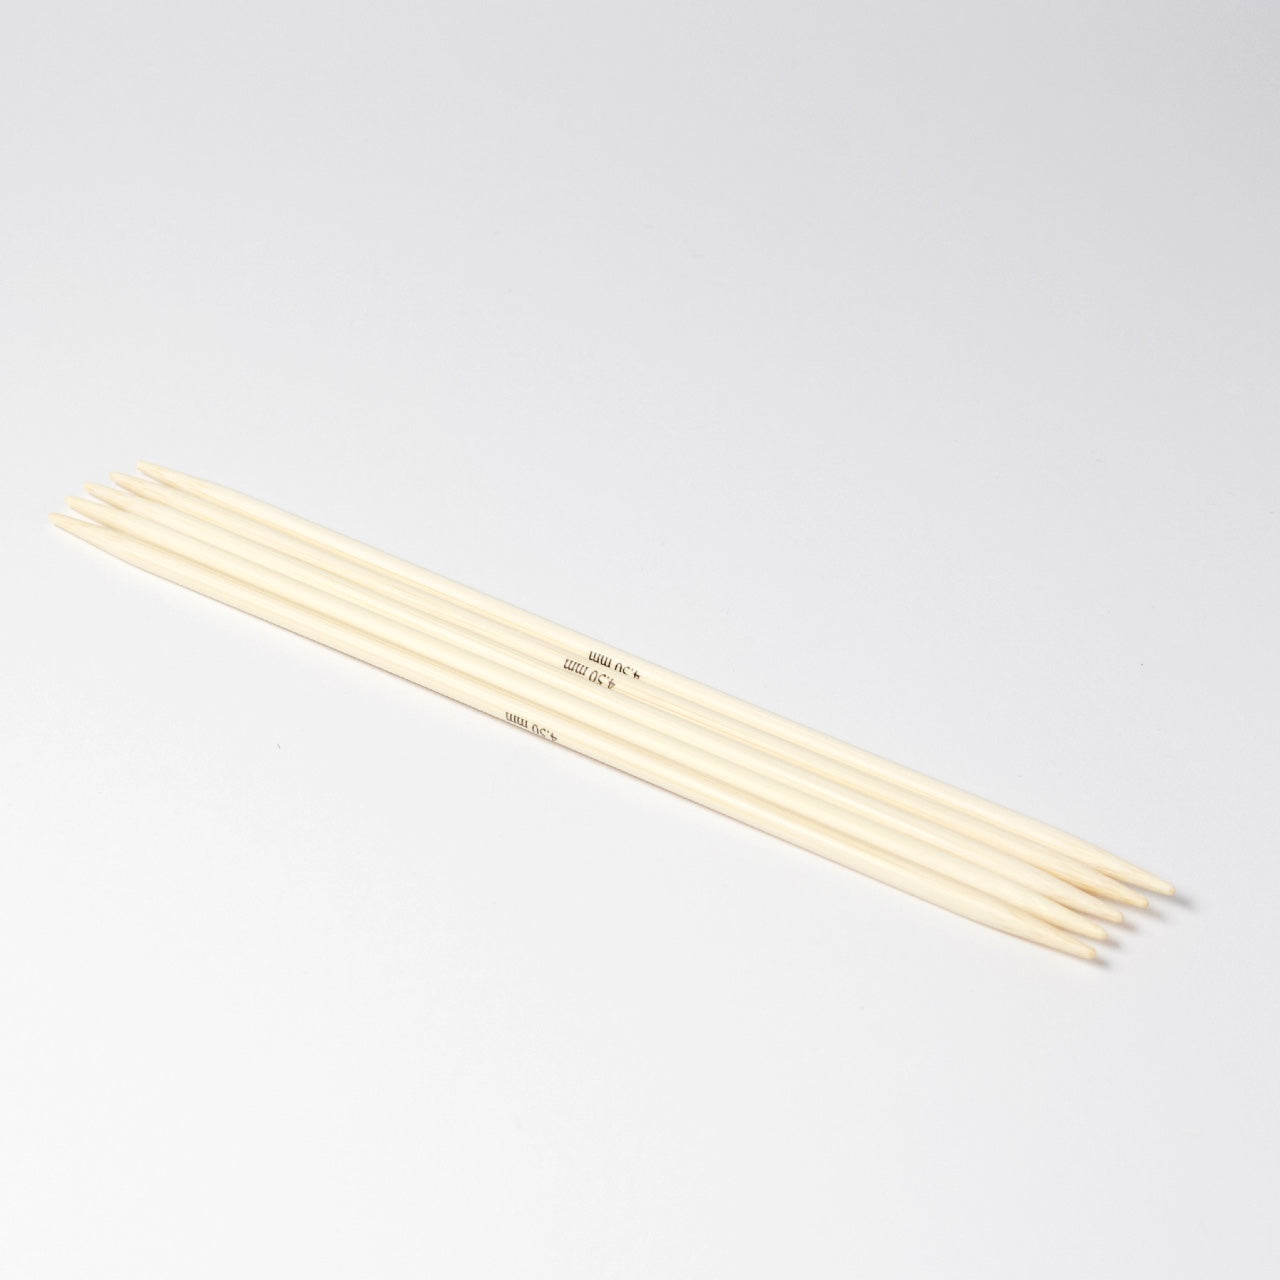 Hjertegarn // STYLE BAMBOO // Strømpepinde 20 cm i bambus str. 4,5 mm